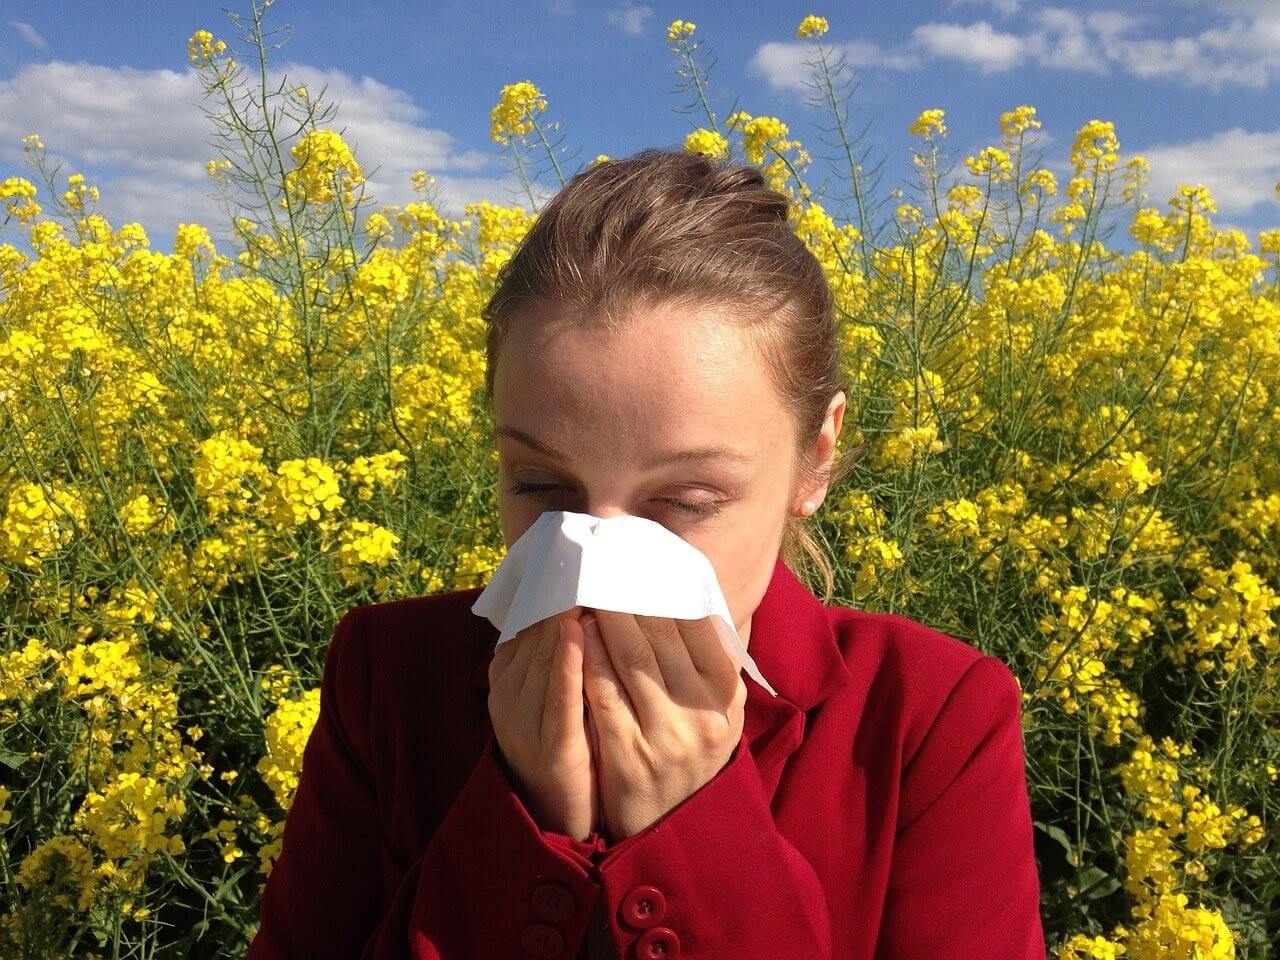 Luftrenare och luftfuktare kan hjälpa pollenallergiker